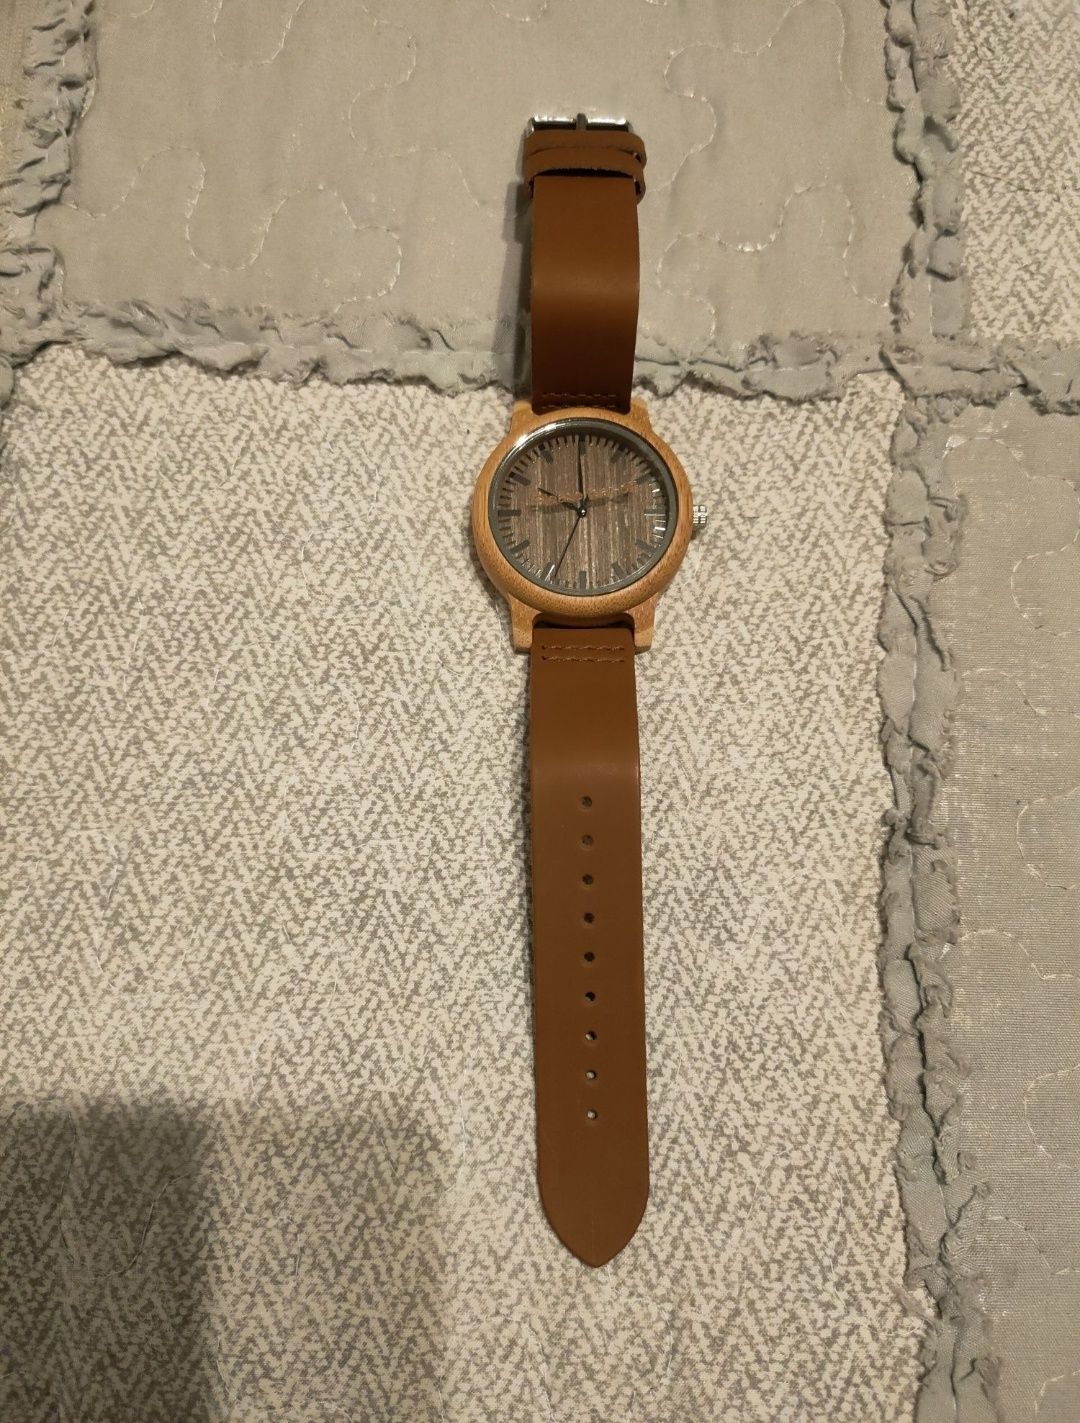 Nowy stylowy zegarek drewniany, damski.